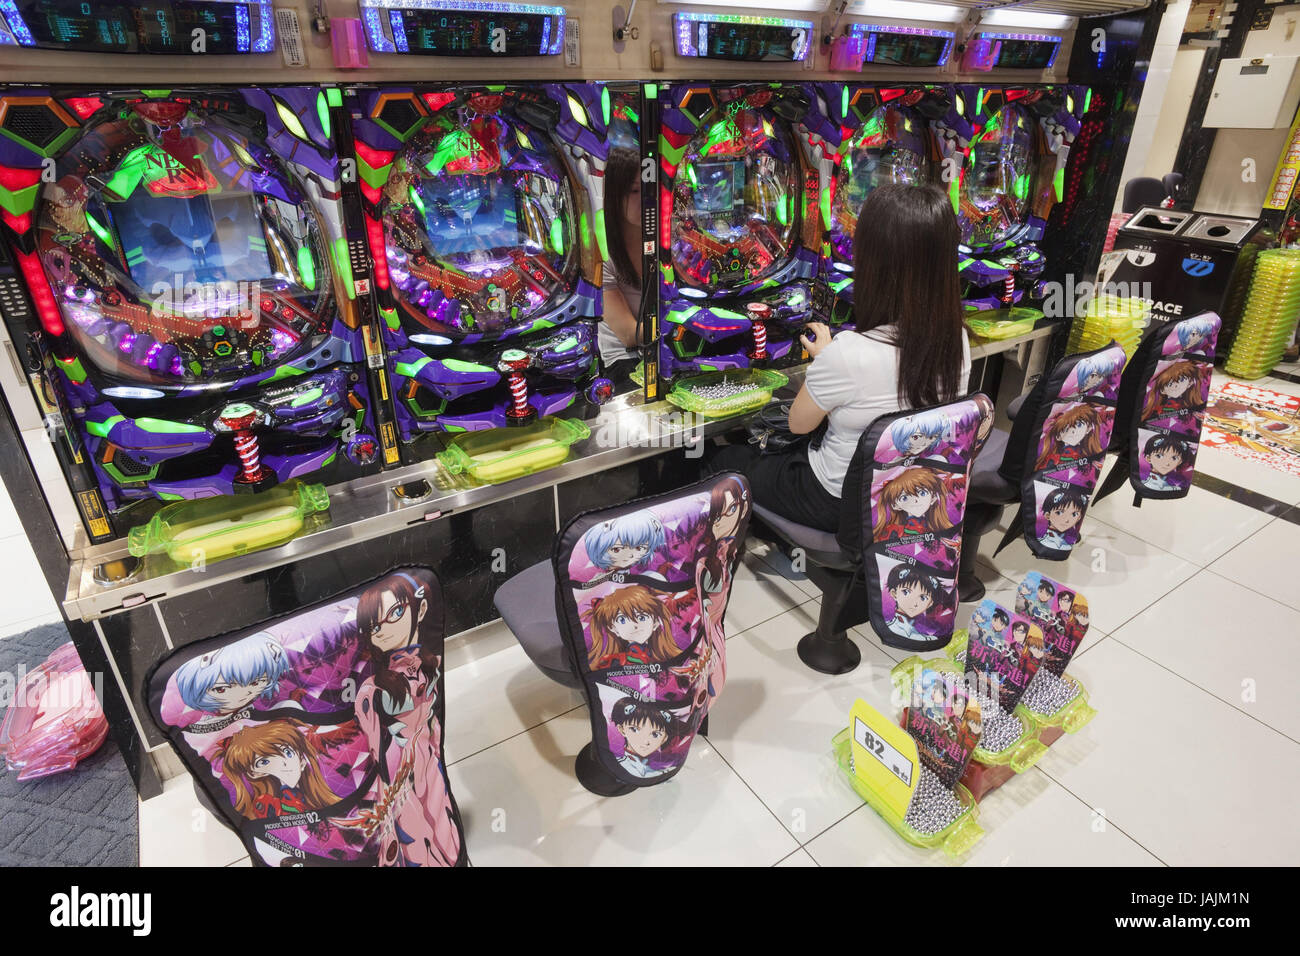 Japan,Tokyo,Shinjuku area,Pachinko game, Stock Photo